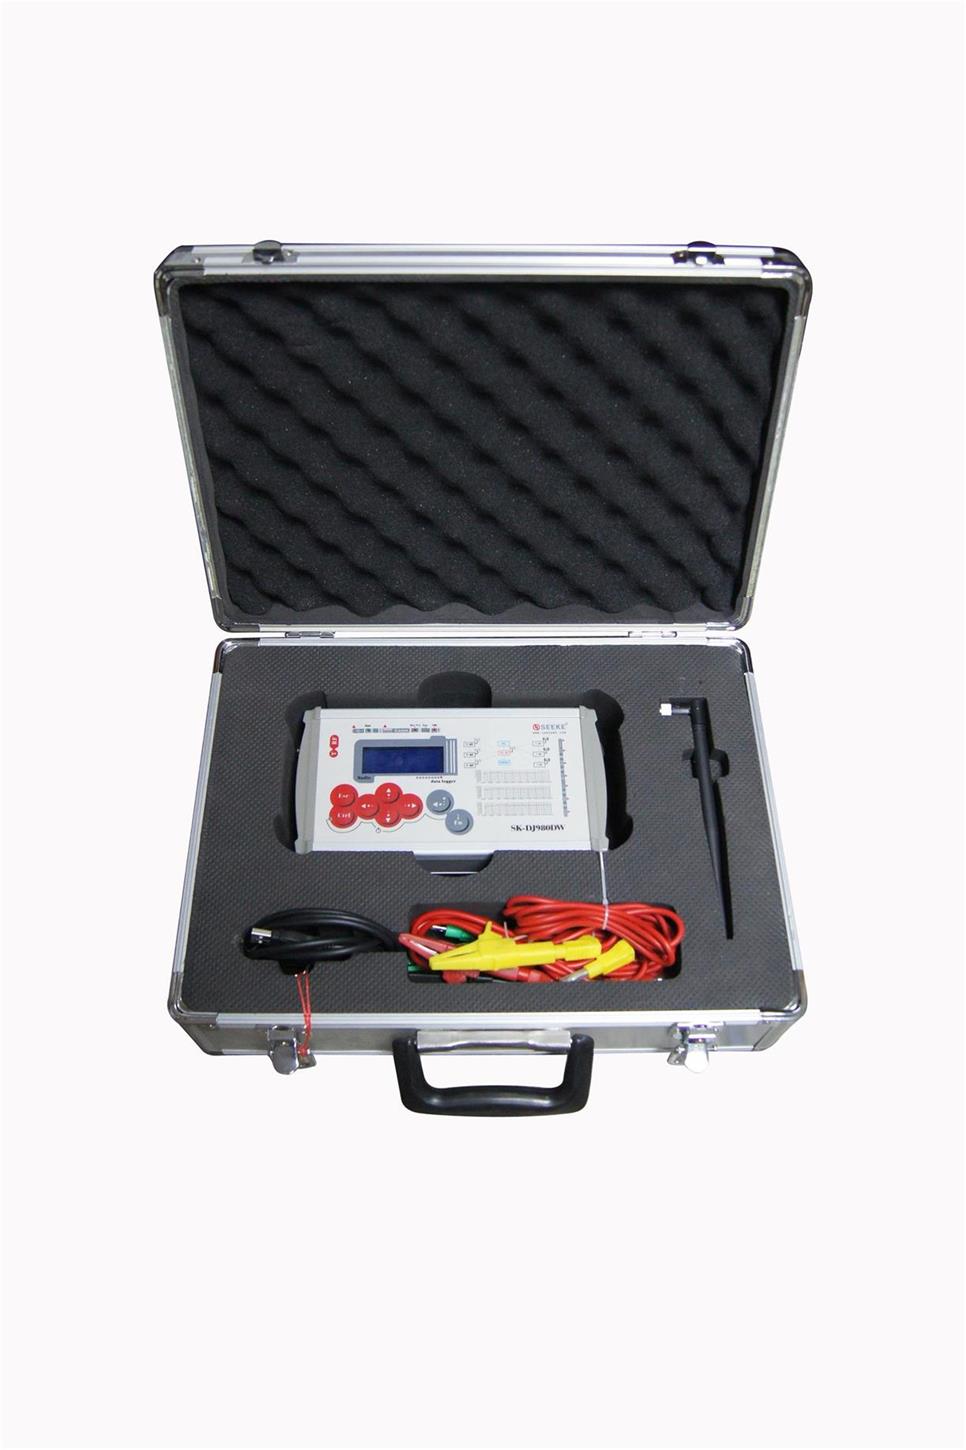 盛科SK-DJ980DWS型电能质量分析仪